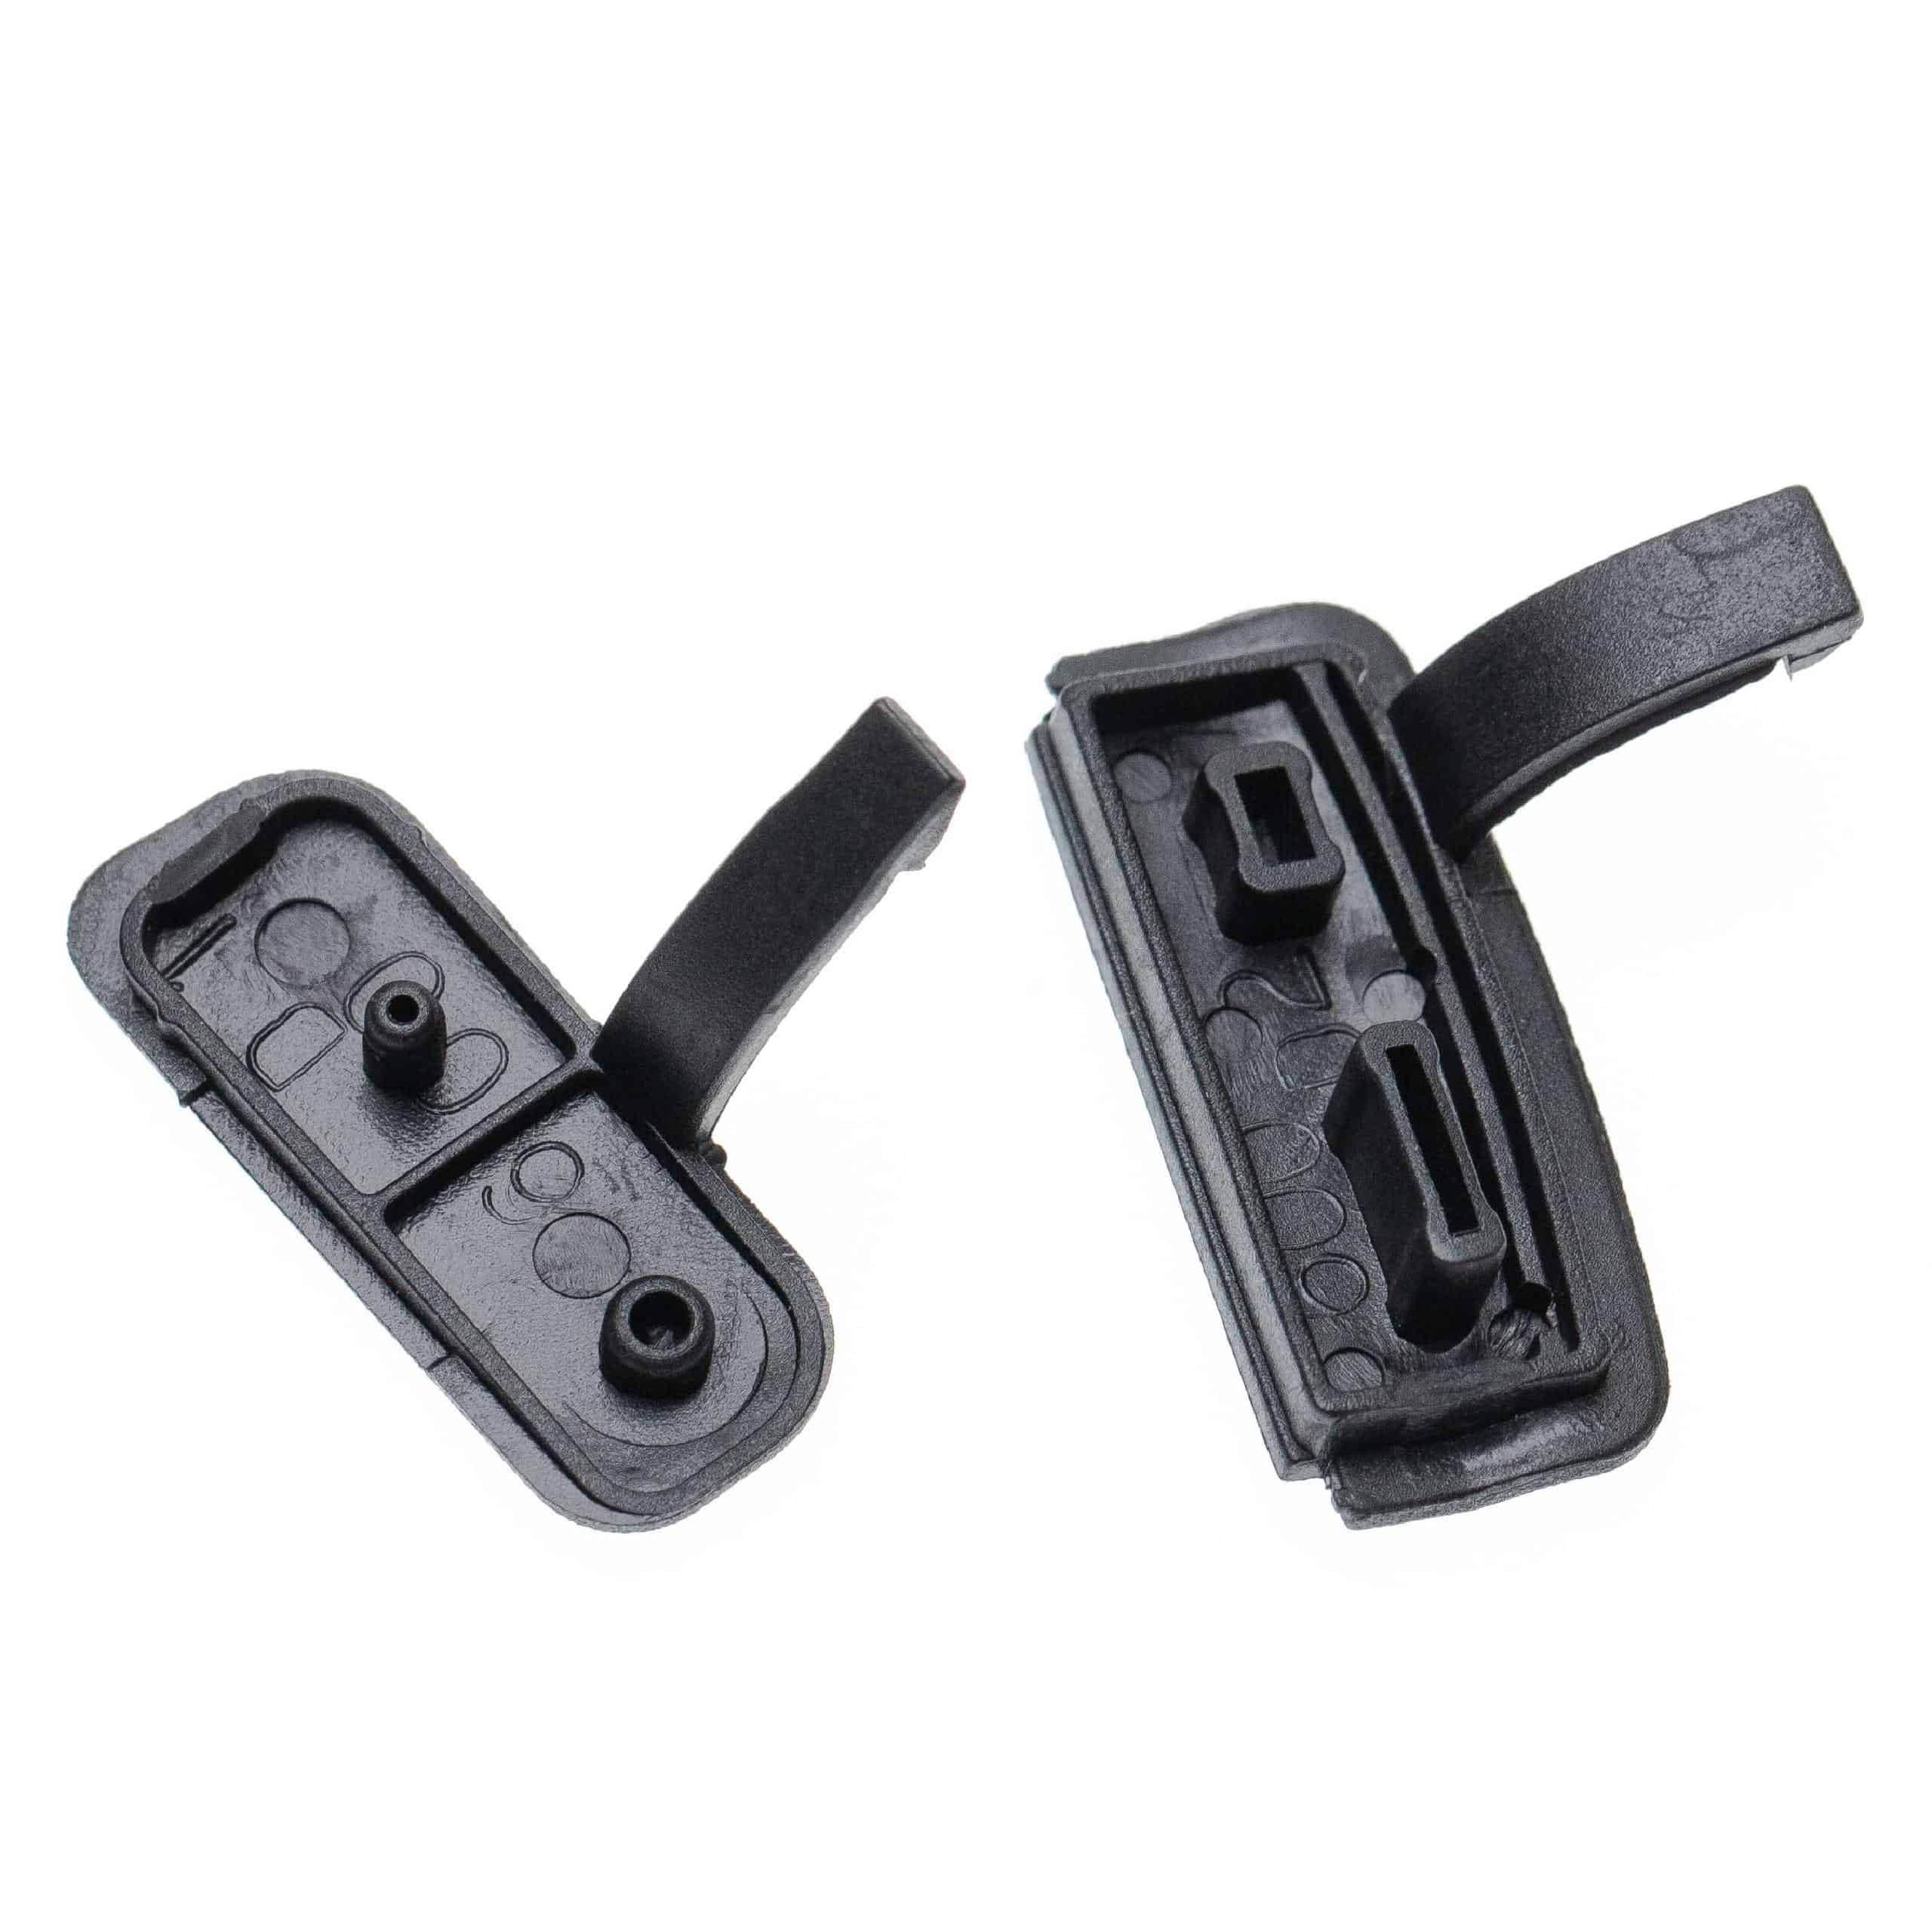 2x Cache-connecteurs pour appareil photo Canon EOS 600D - Capuchons de rechange, gomme, noir